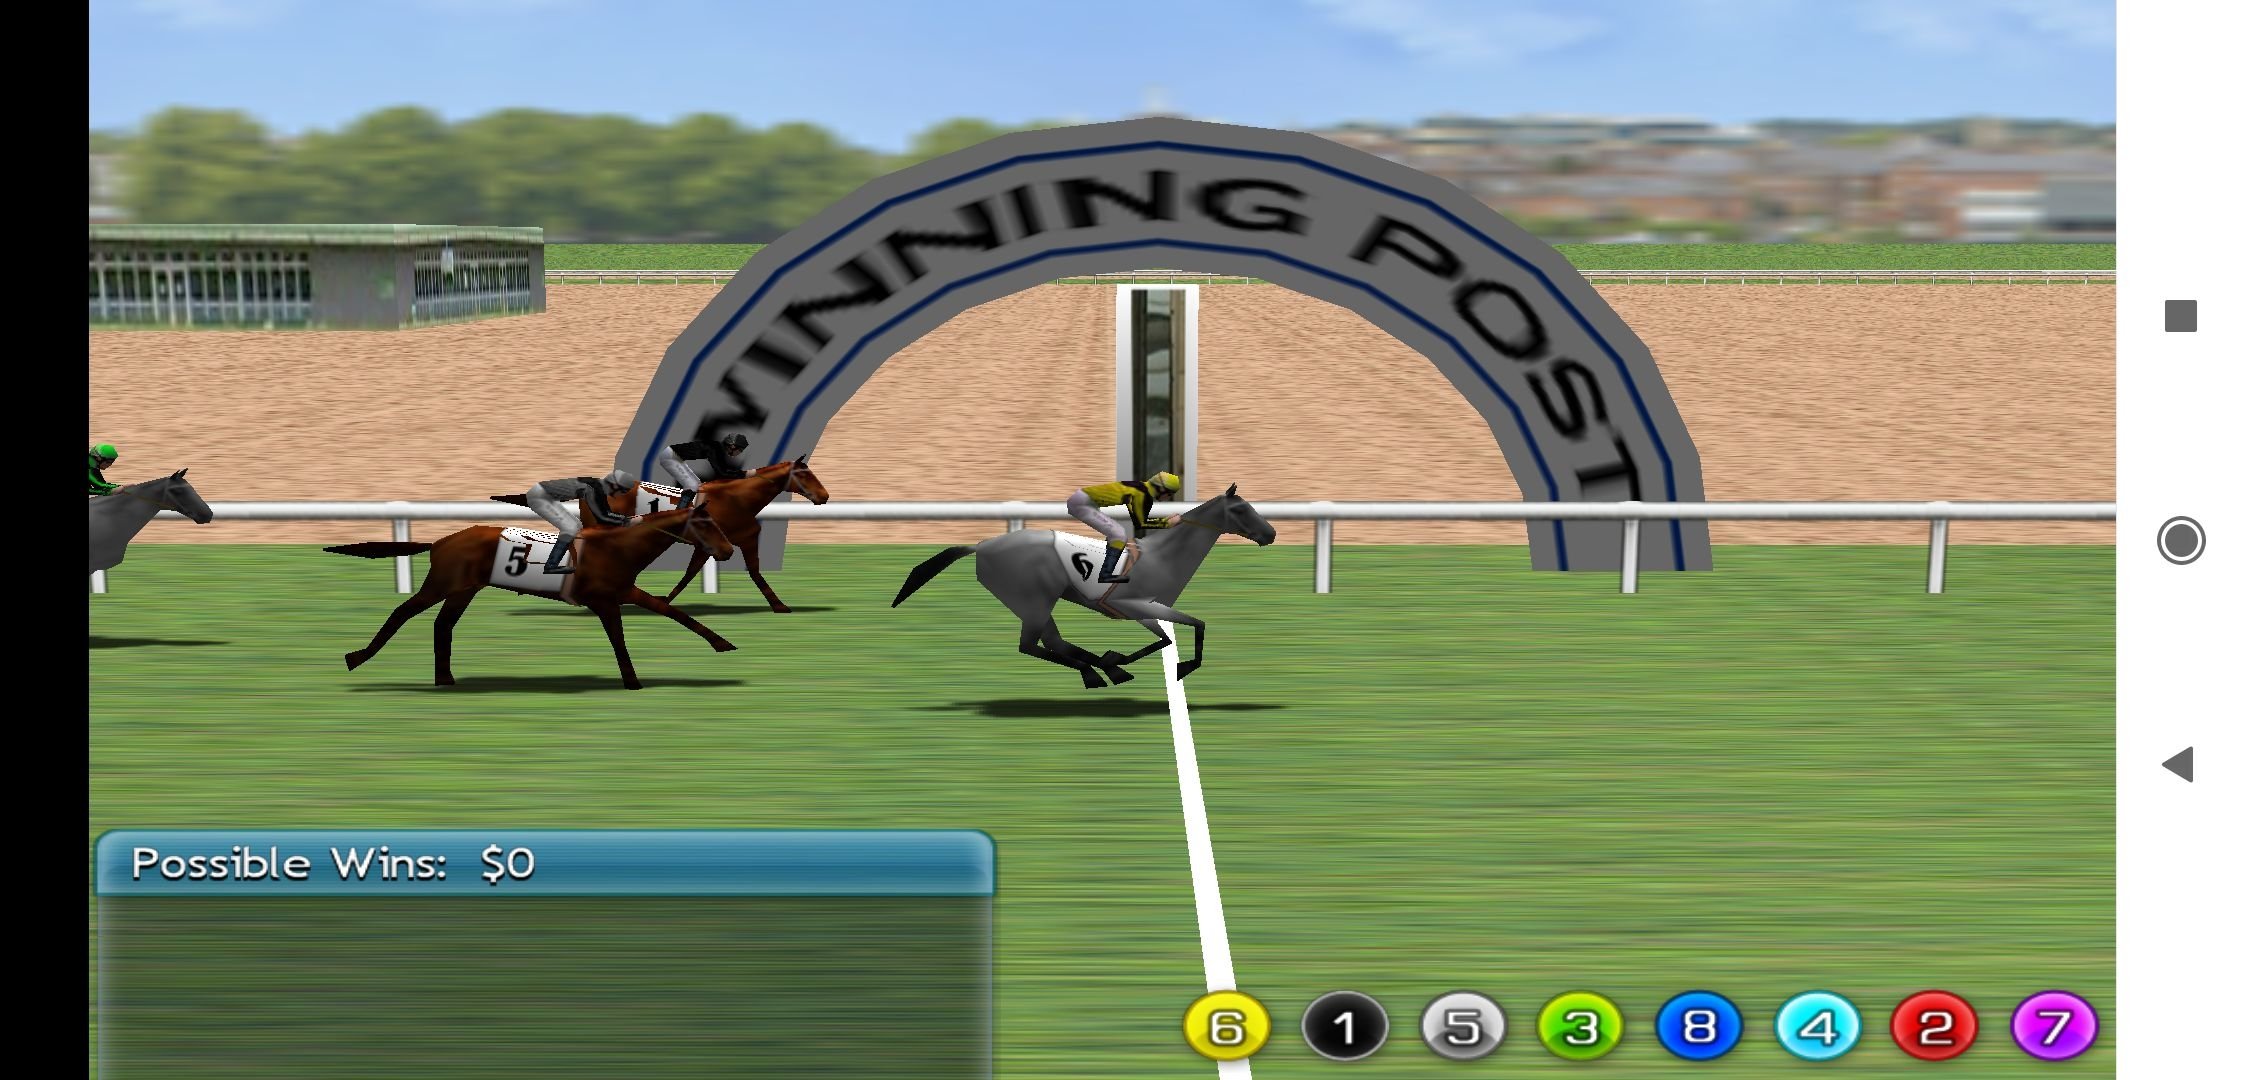 Jogo Horse Run 3D